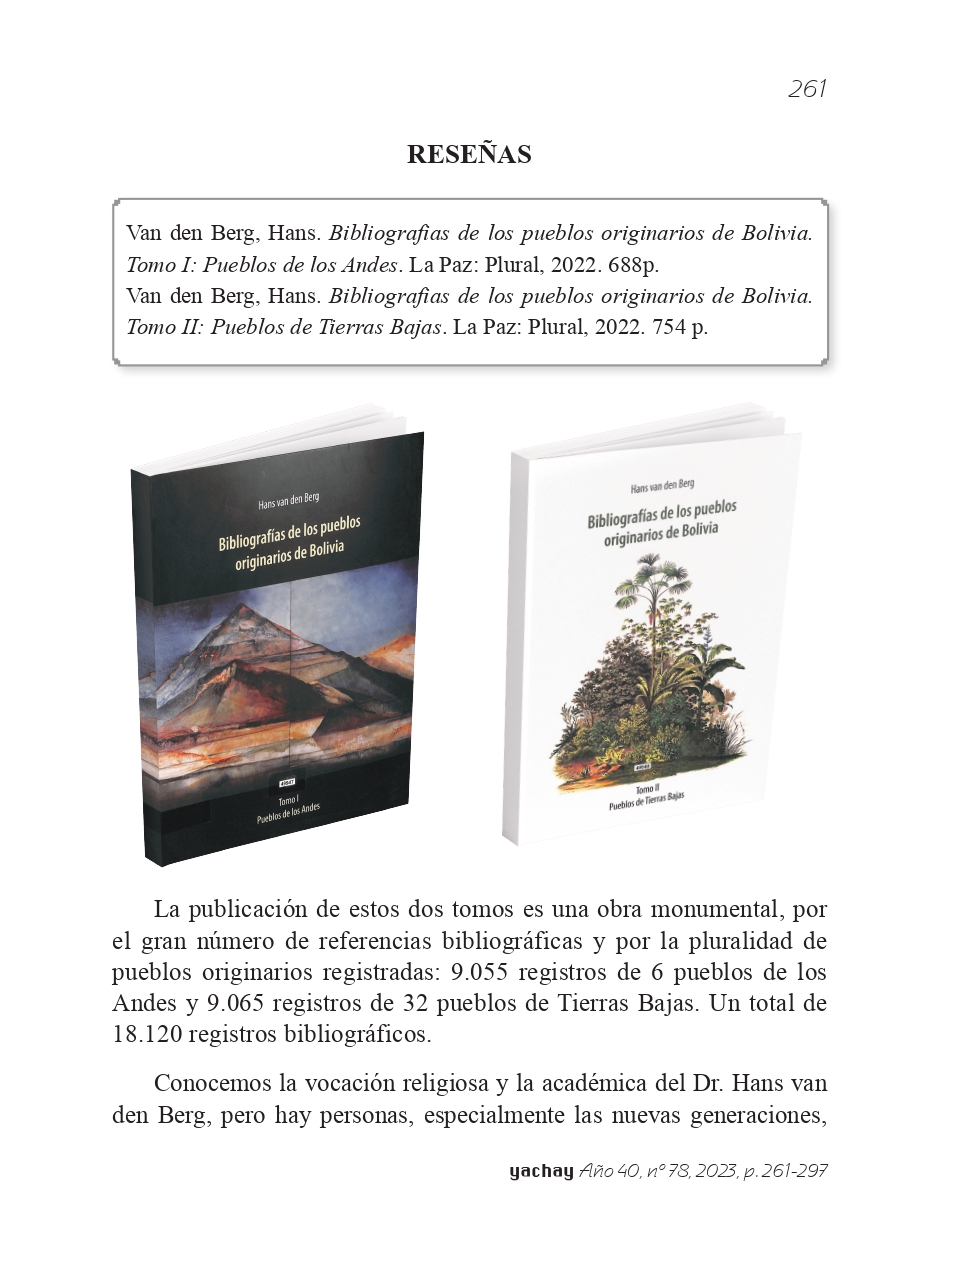 Bibliografías de los pueblos originarios de Bolivia. Tomo I y II